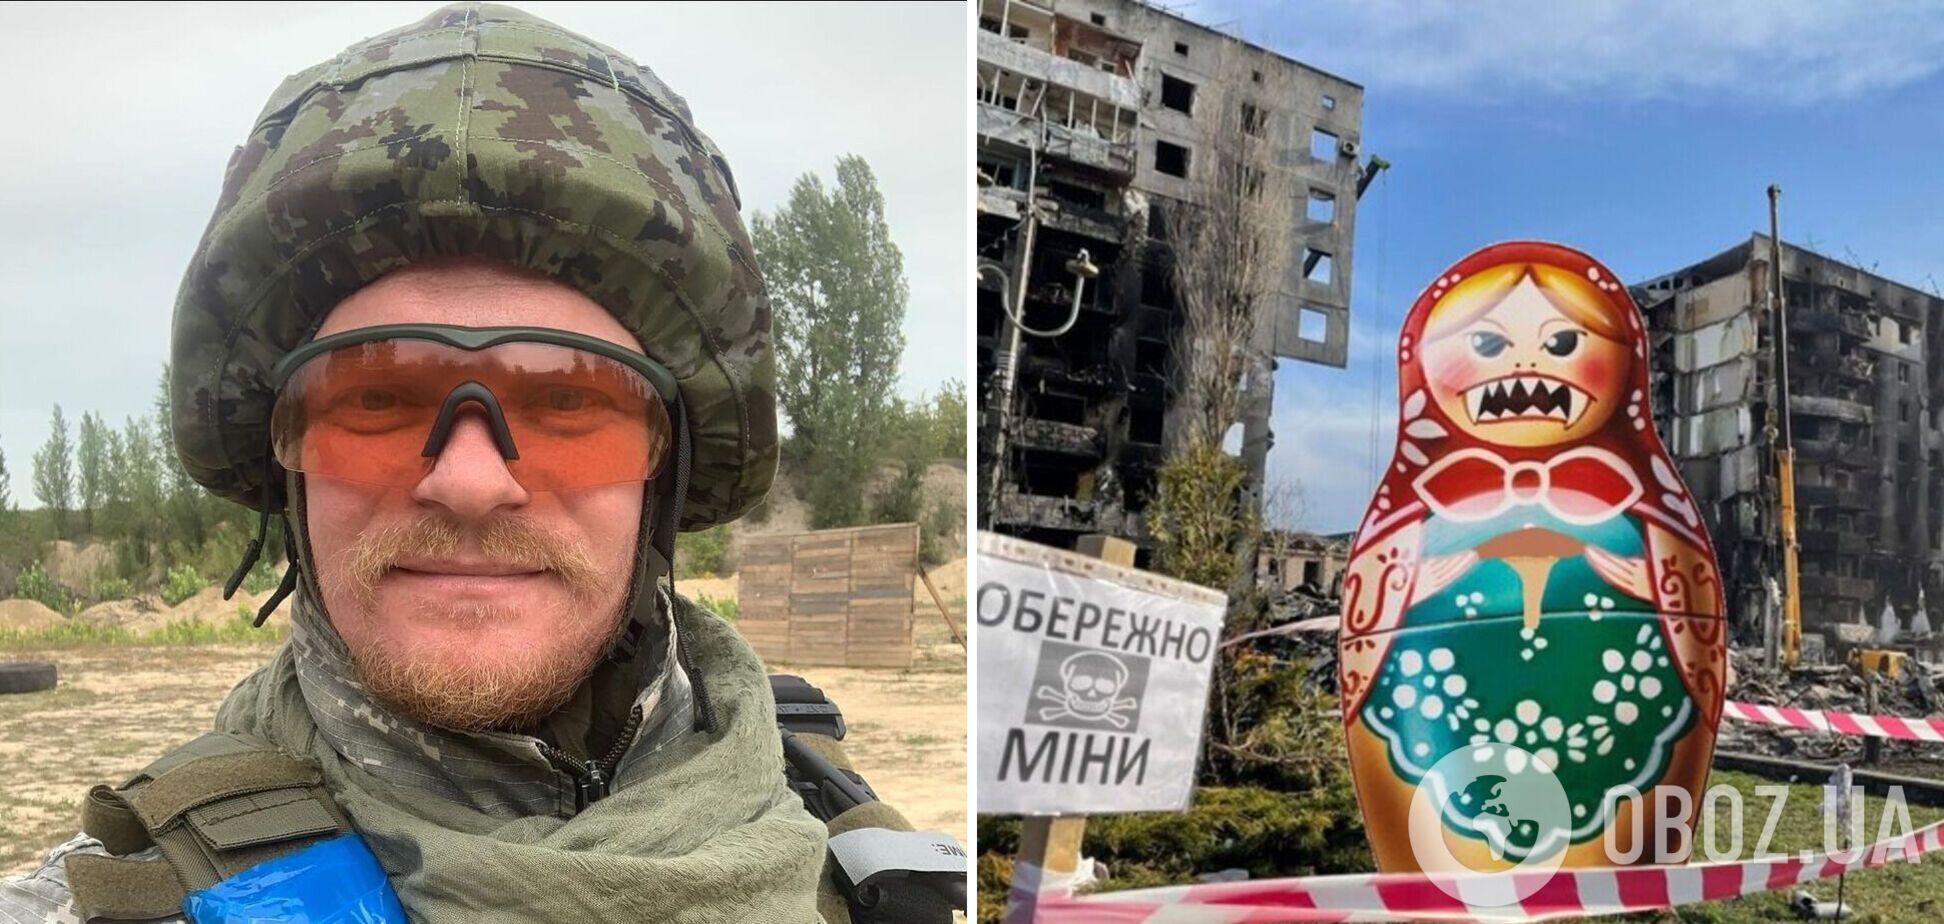 'Ложный путь': звезда 'Крепостной' Печерица, который защищает Украину, высказался против запрета русской культуры